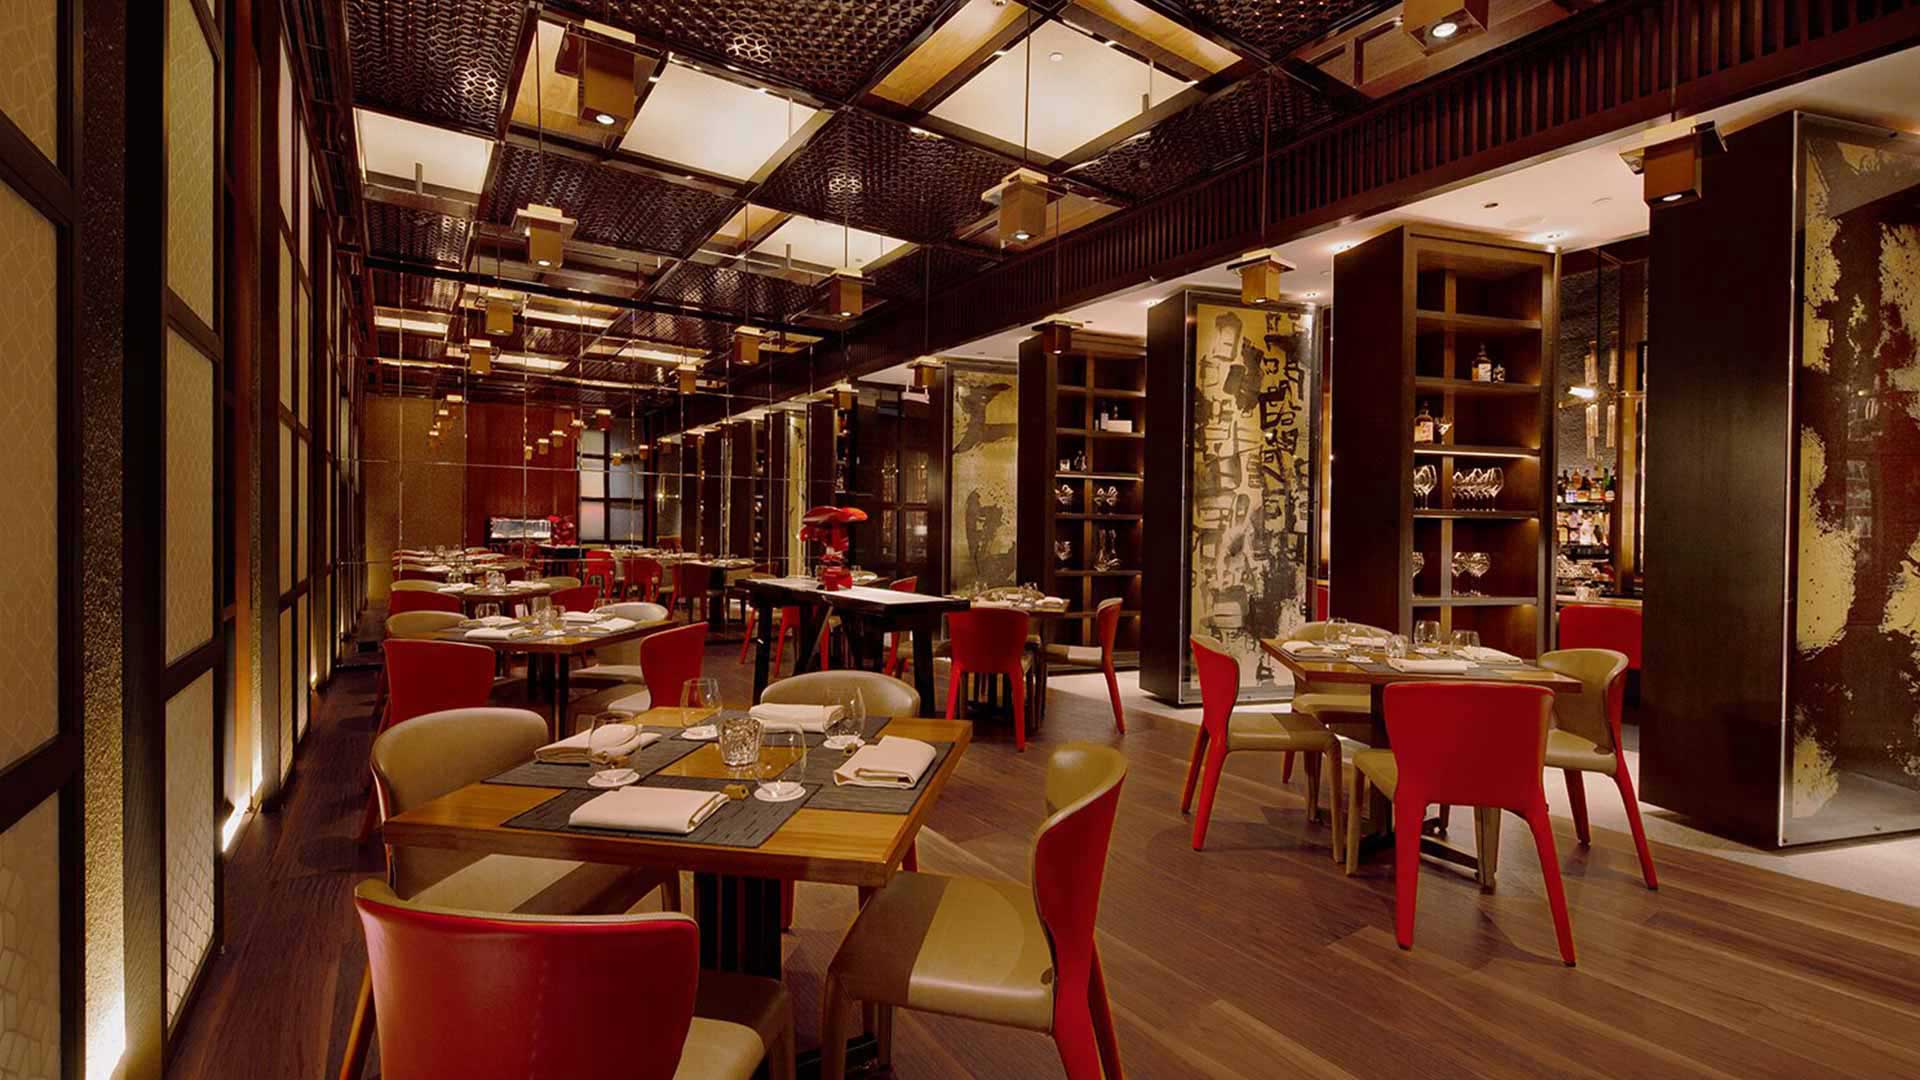 プライベートイベントやカンファレンスに対応可能なシンガポールのミシュランレストランWaku Ghinのメインダイニングホール